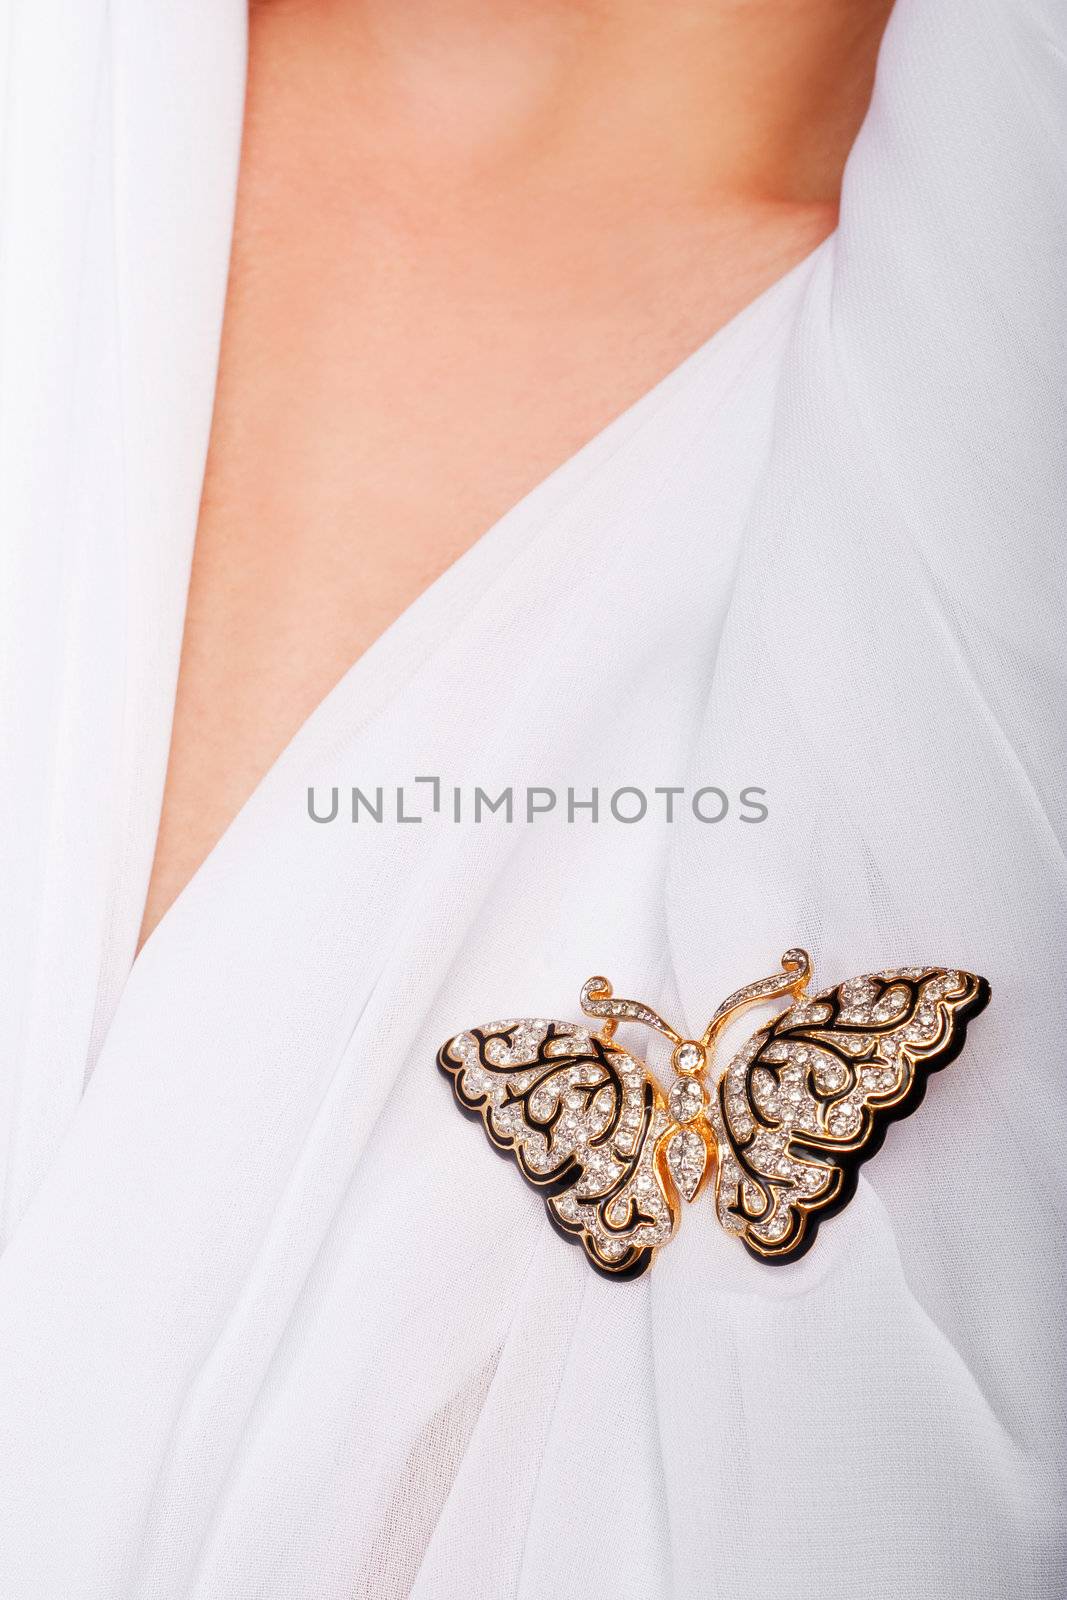 precious butterfly by igor_stramyk